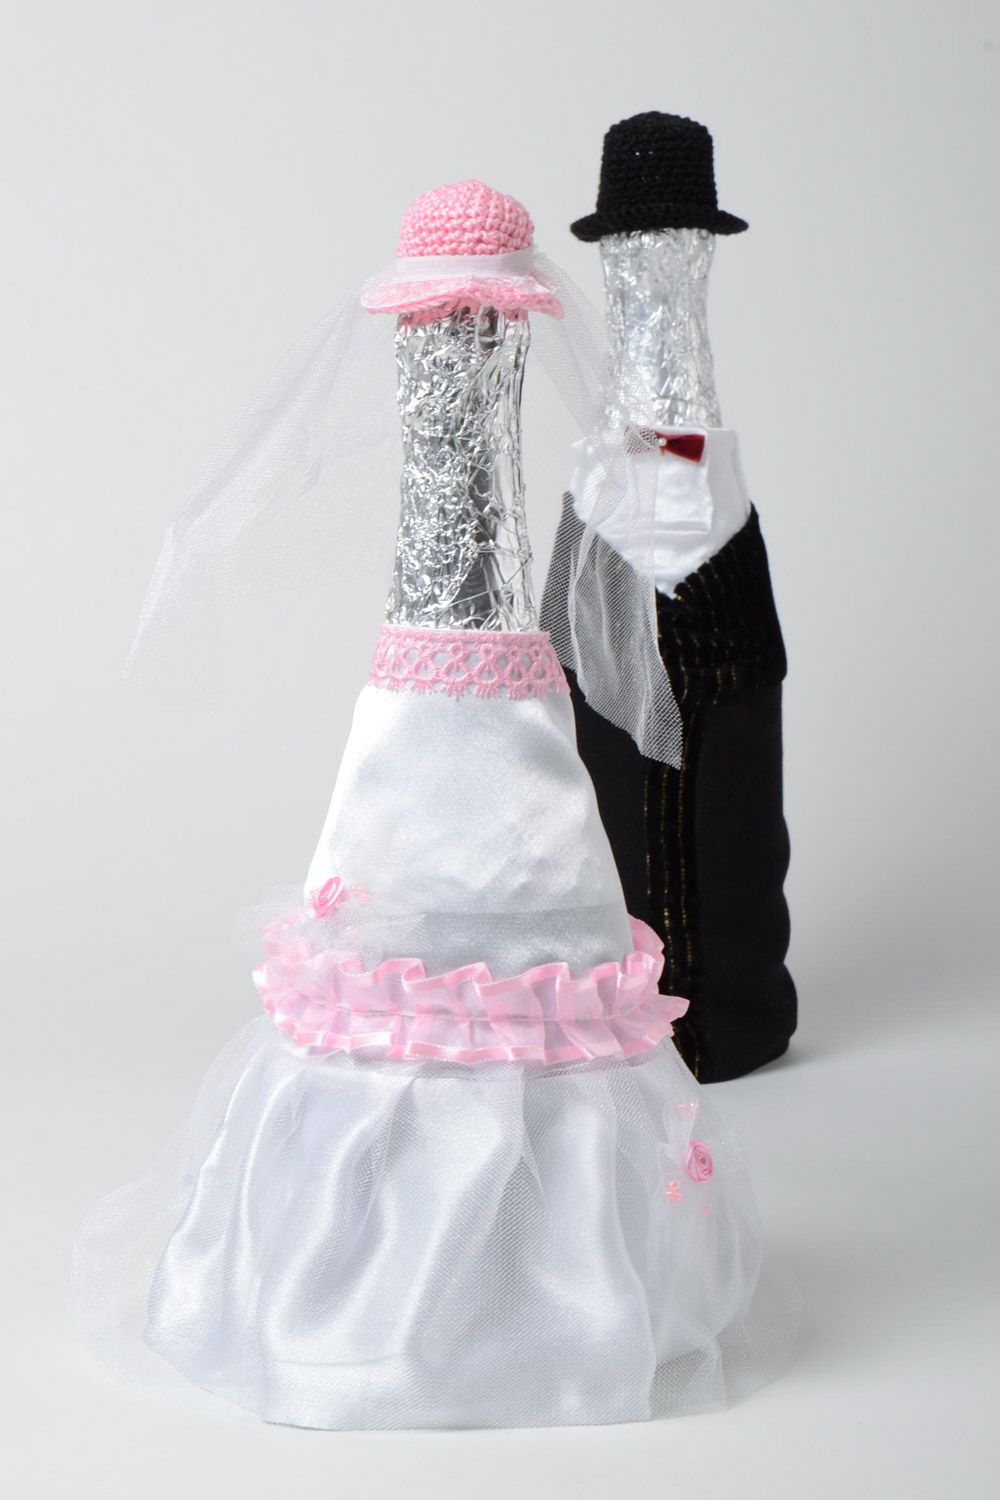 Handmade Hochzeit Tischdeko Flaschen Kleidung Brautpaar elegant schön schwarz weiß foto 3